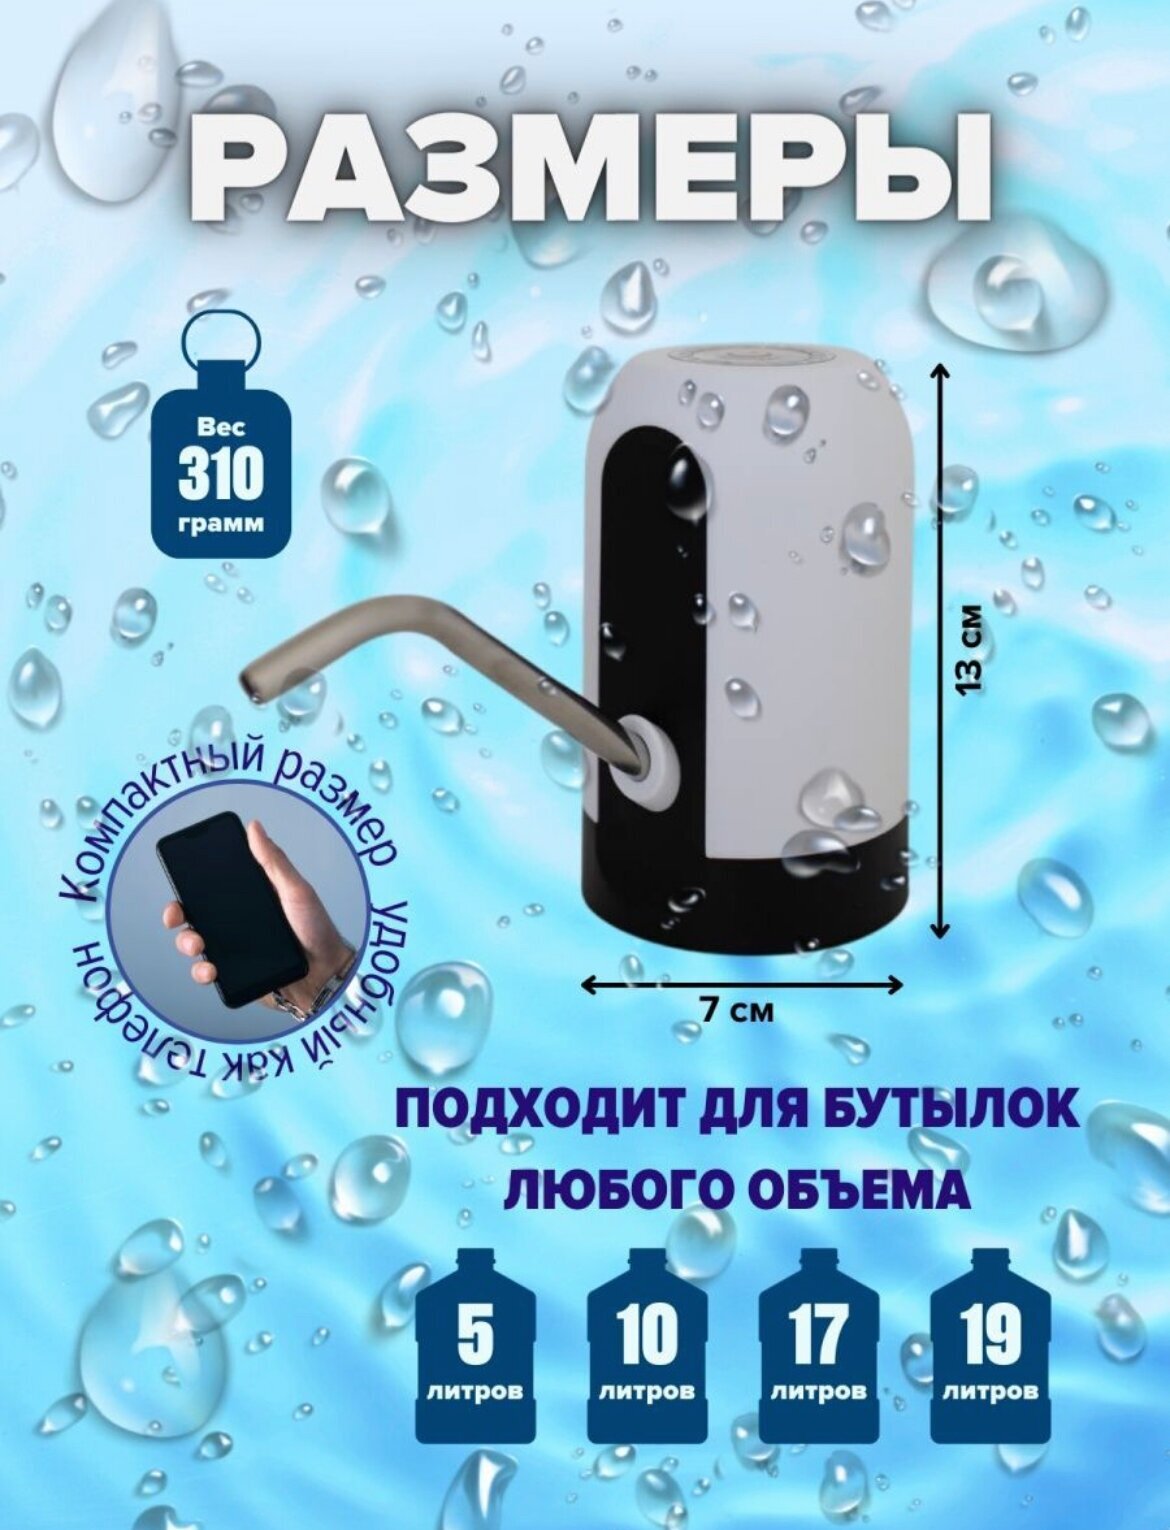 Помпа для воды автоматическая/аккумуляторный насос на кулер для воды 1200mAh